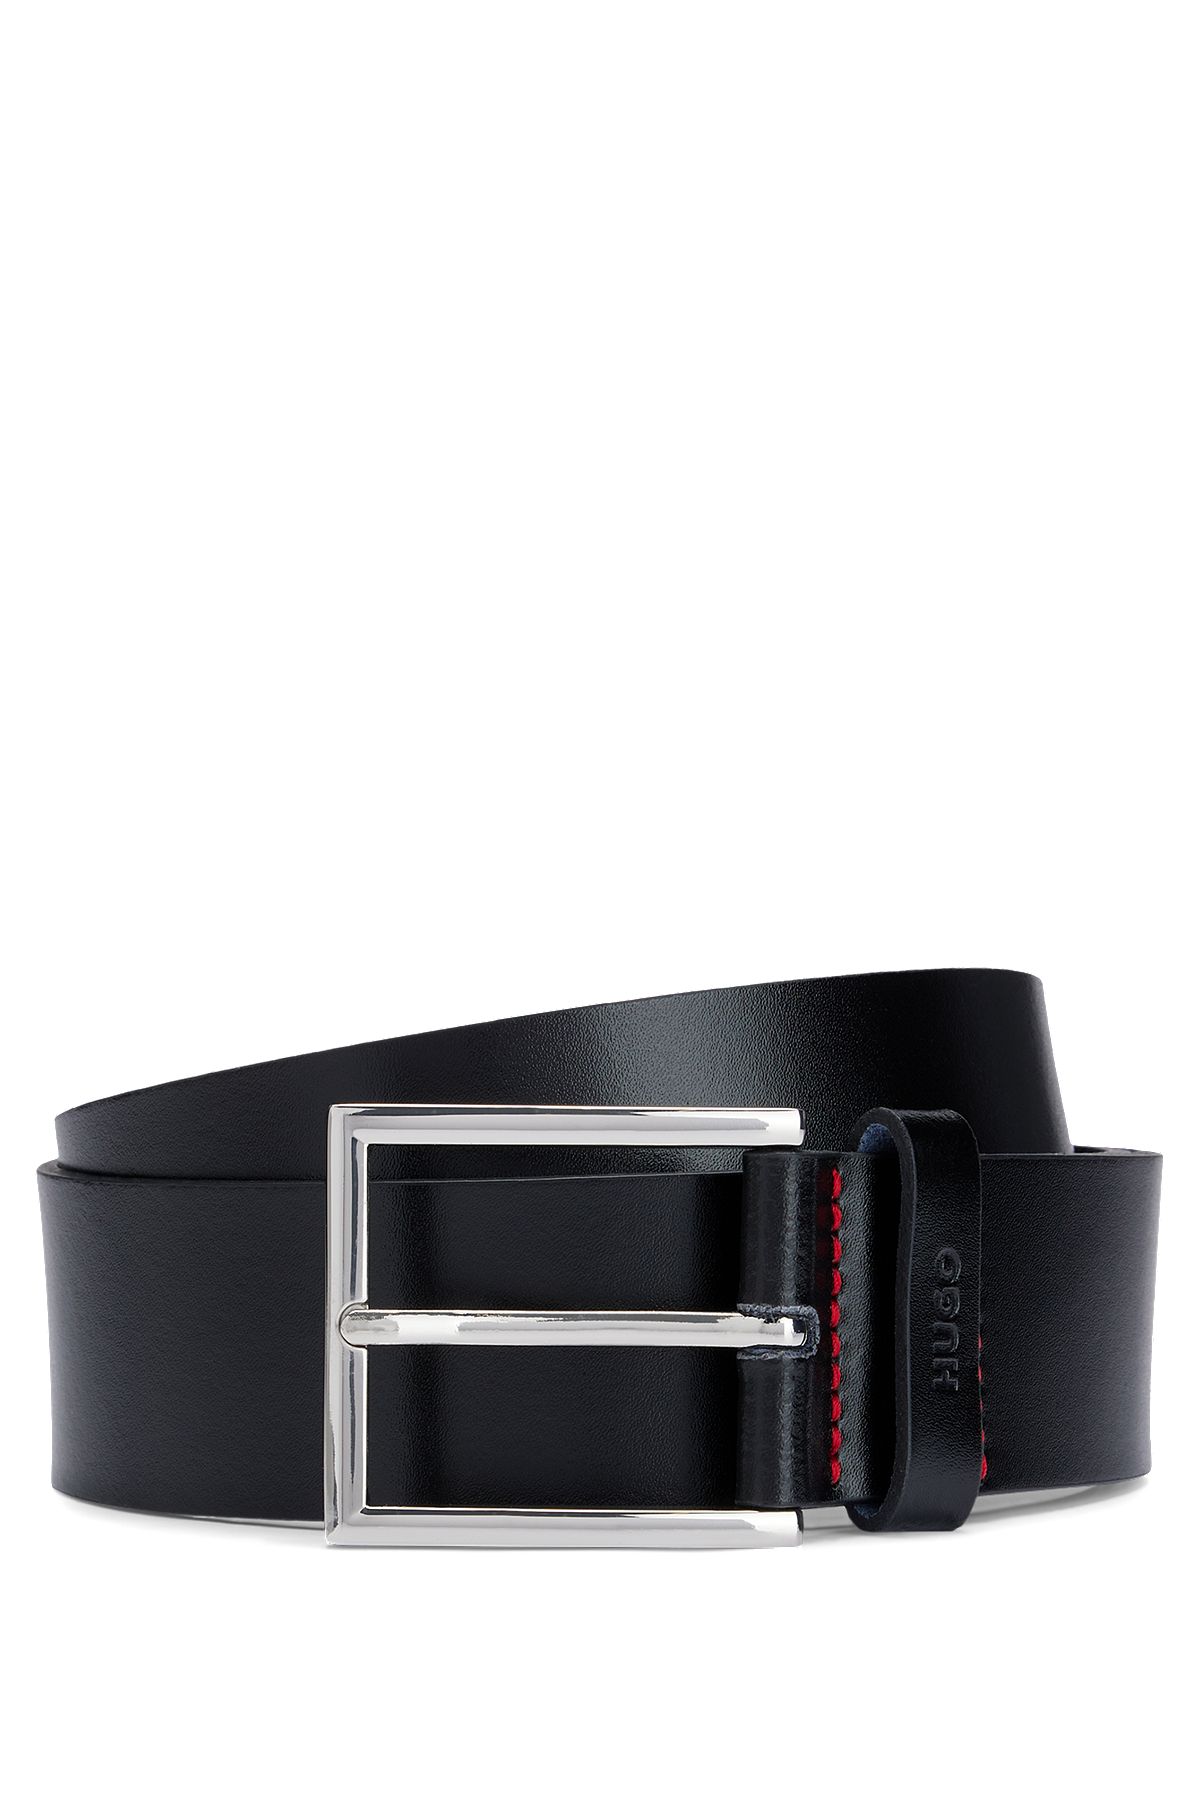 Belts in Black by HUGO BOSS |